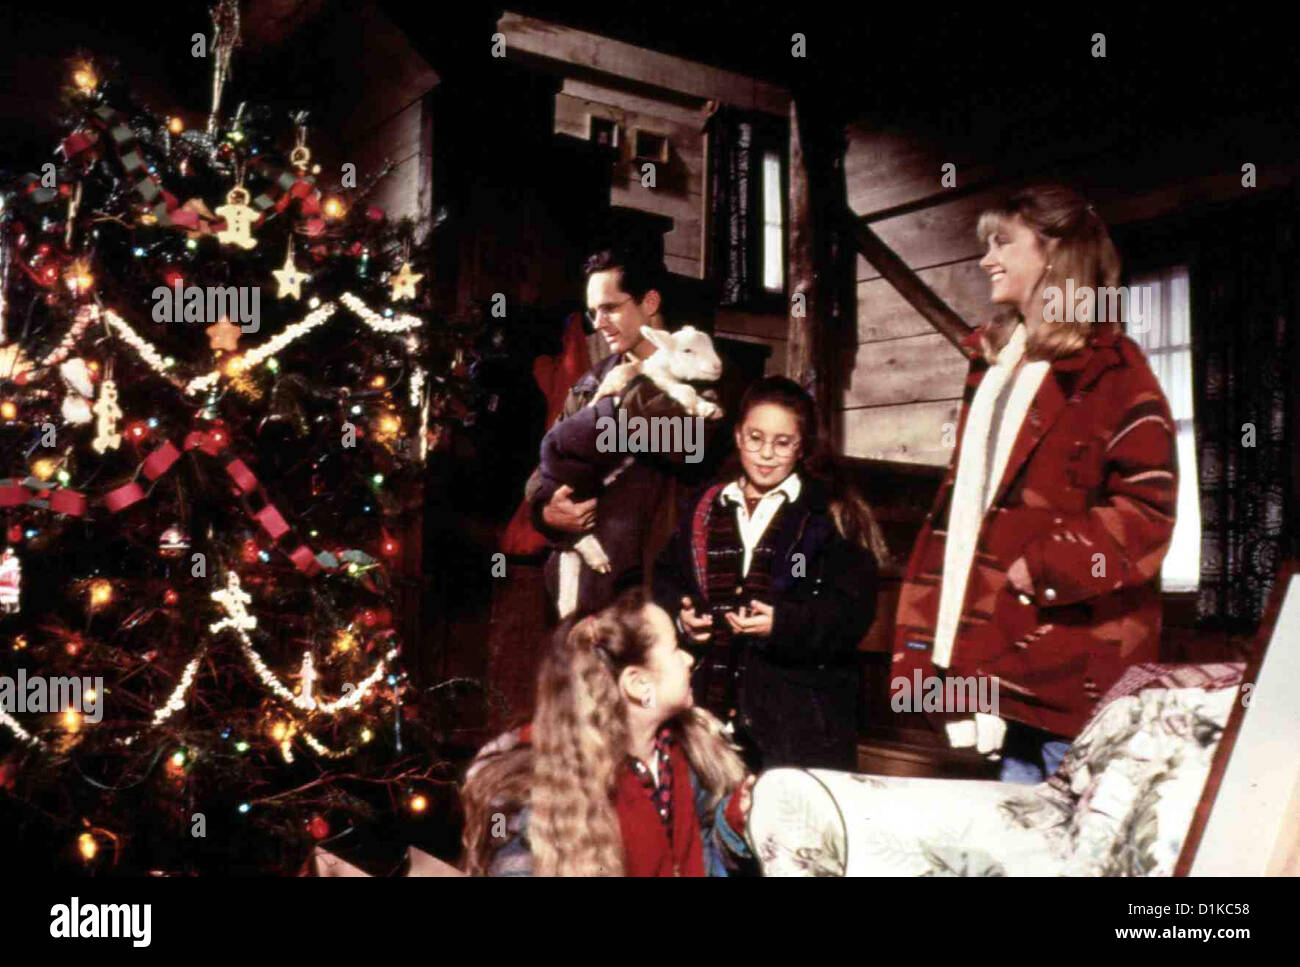 Eingeschneit - Weihnachten Im Schneesturm  Christmas Romance,  v.l.: G.Harrison, St.Sawyer, Chl.Lattanzi, O.Newton-John *** Stock Photo